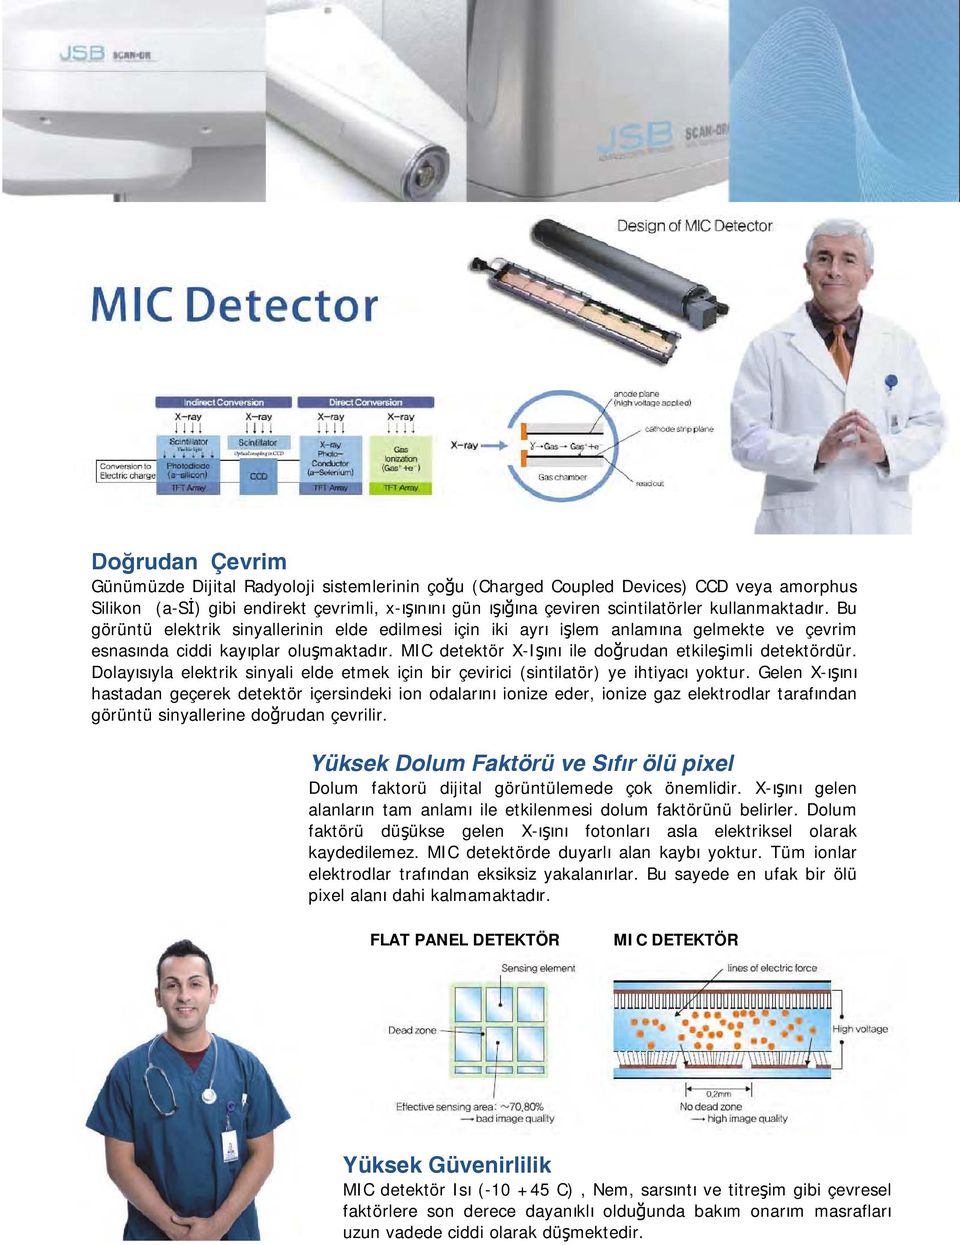 MIC detektör X-Işını ile doğrudan etkileşimli detektördür. Dolayısıyla elektrik sinyali elde etmek için bir çevirici (sintilatör) ye ihtiyacı yoktur.